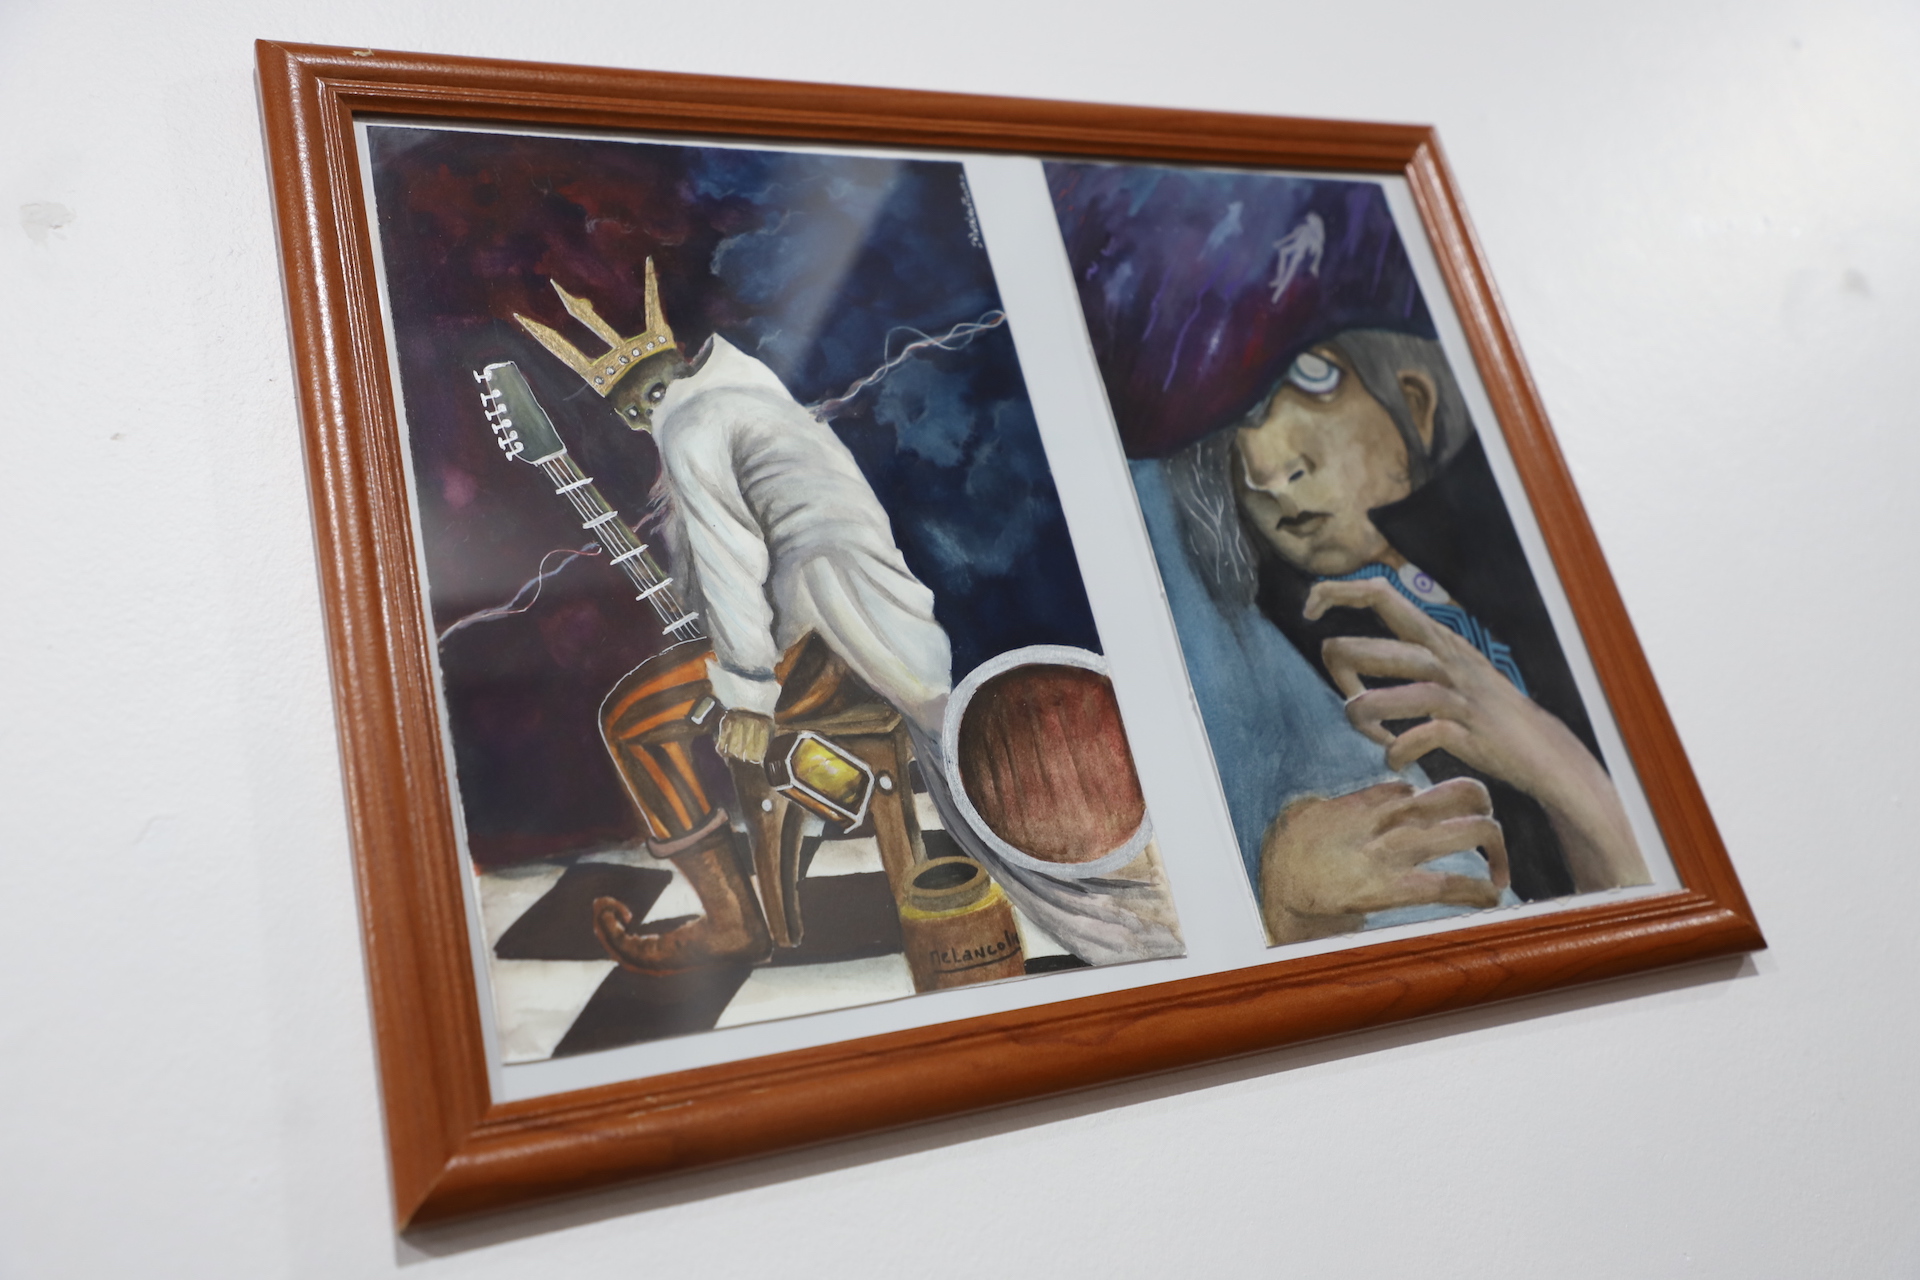 Galería de Arte Pablo presenta “Cosmogonía” del artista Alan Araya Arancibia